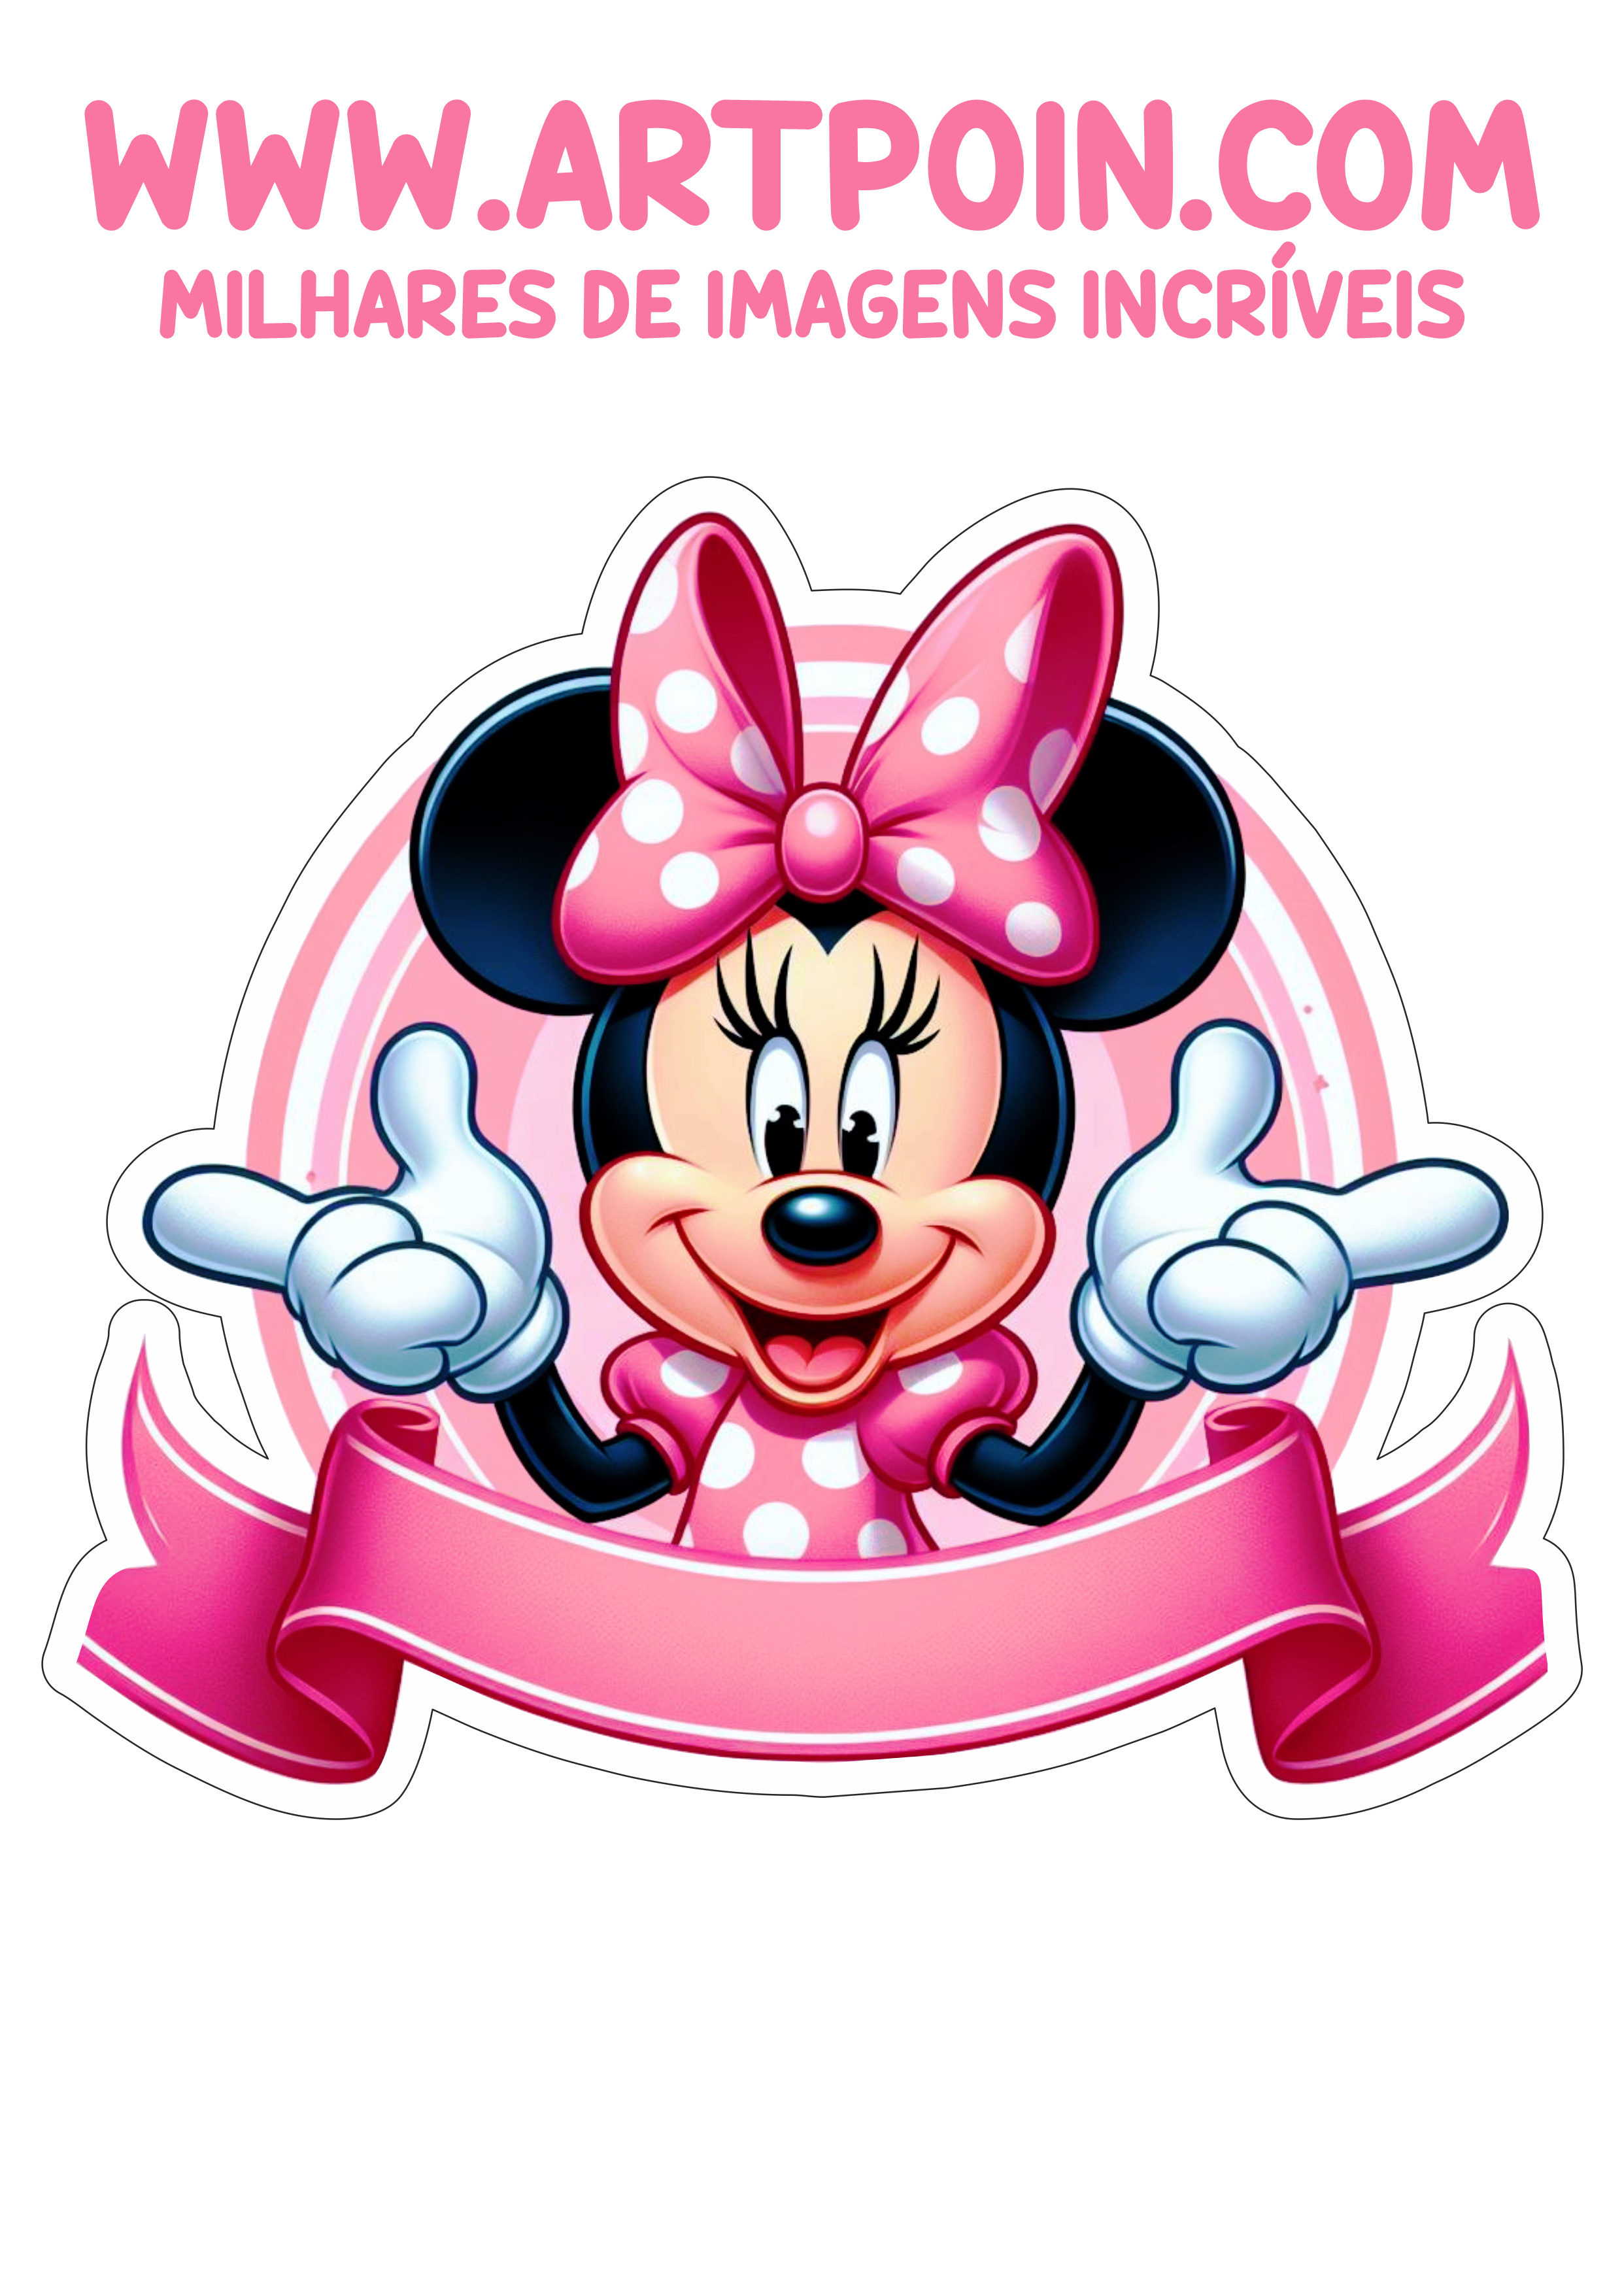 Topo de bolo Minnie rosa pronto para imprimir e decorar aniversário infantil festa personalizada faixa png